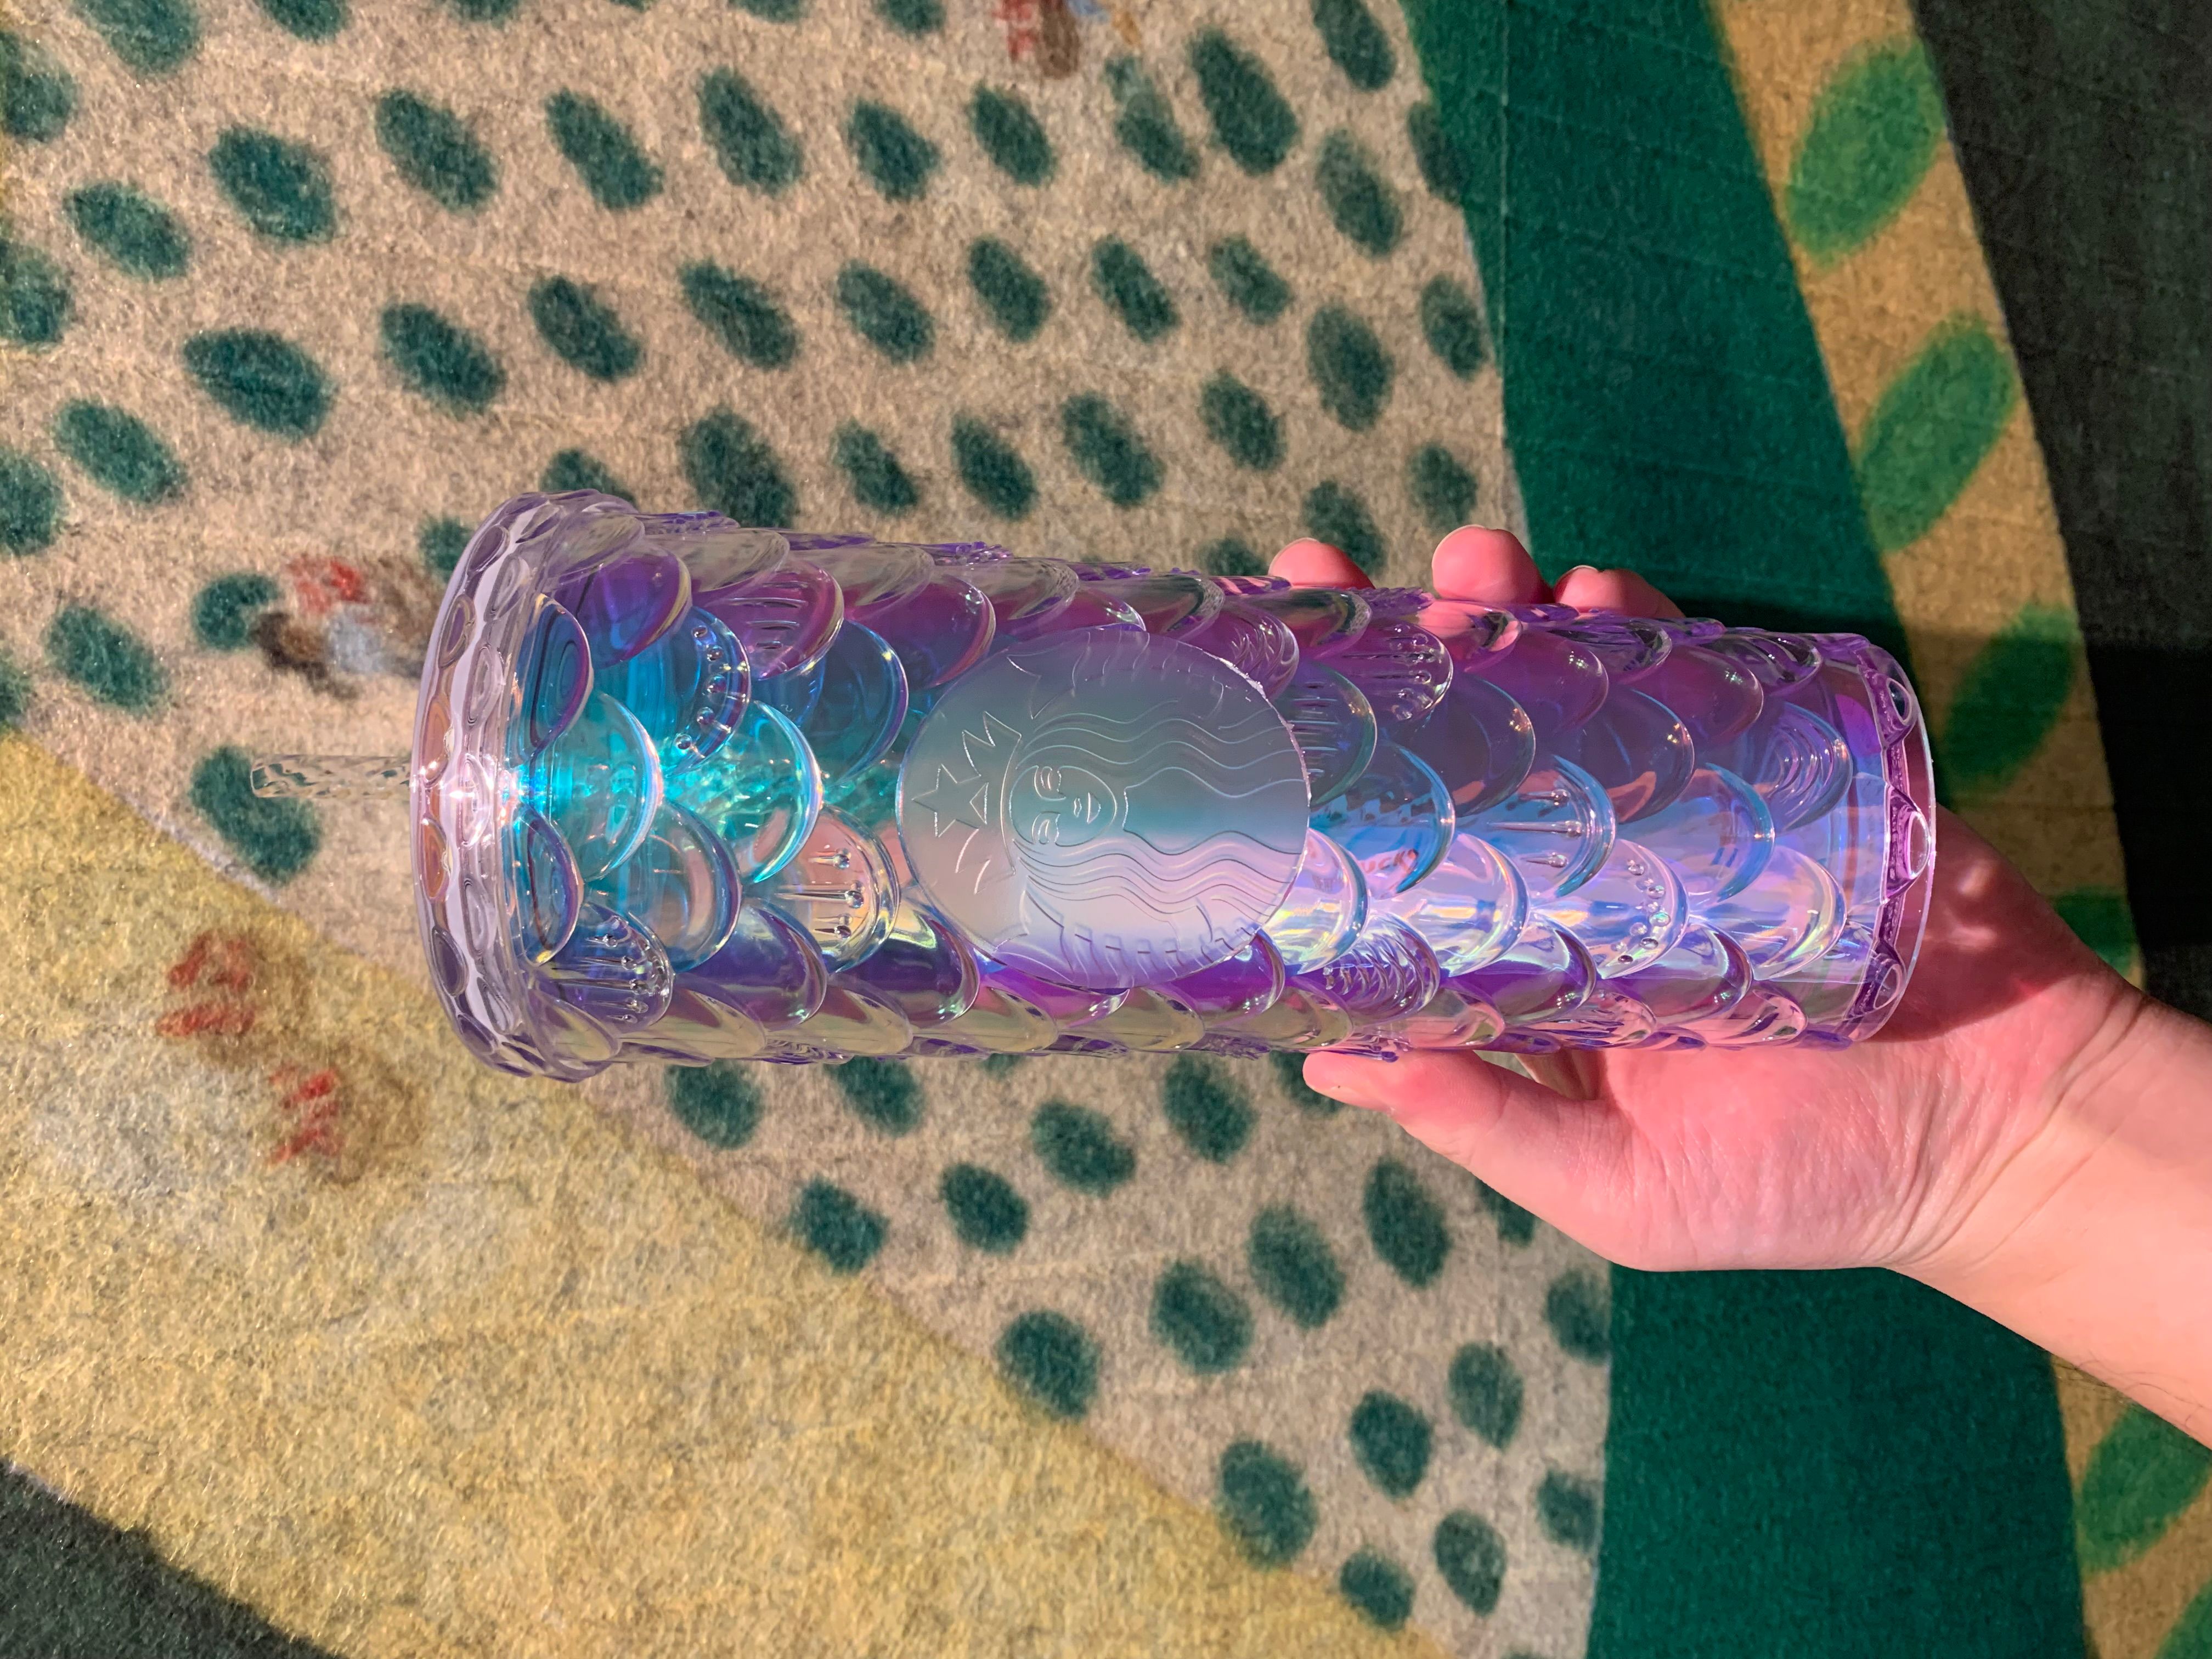 700ml/24oz Blue Unicorn Plastic Contigo Sippy Cup – Ann Ann Starbucks